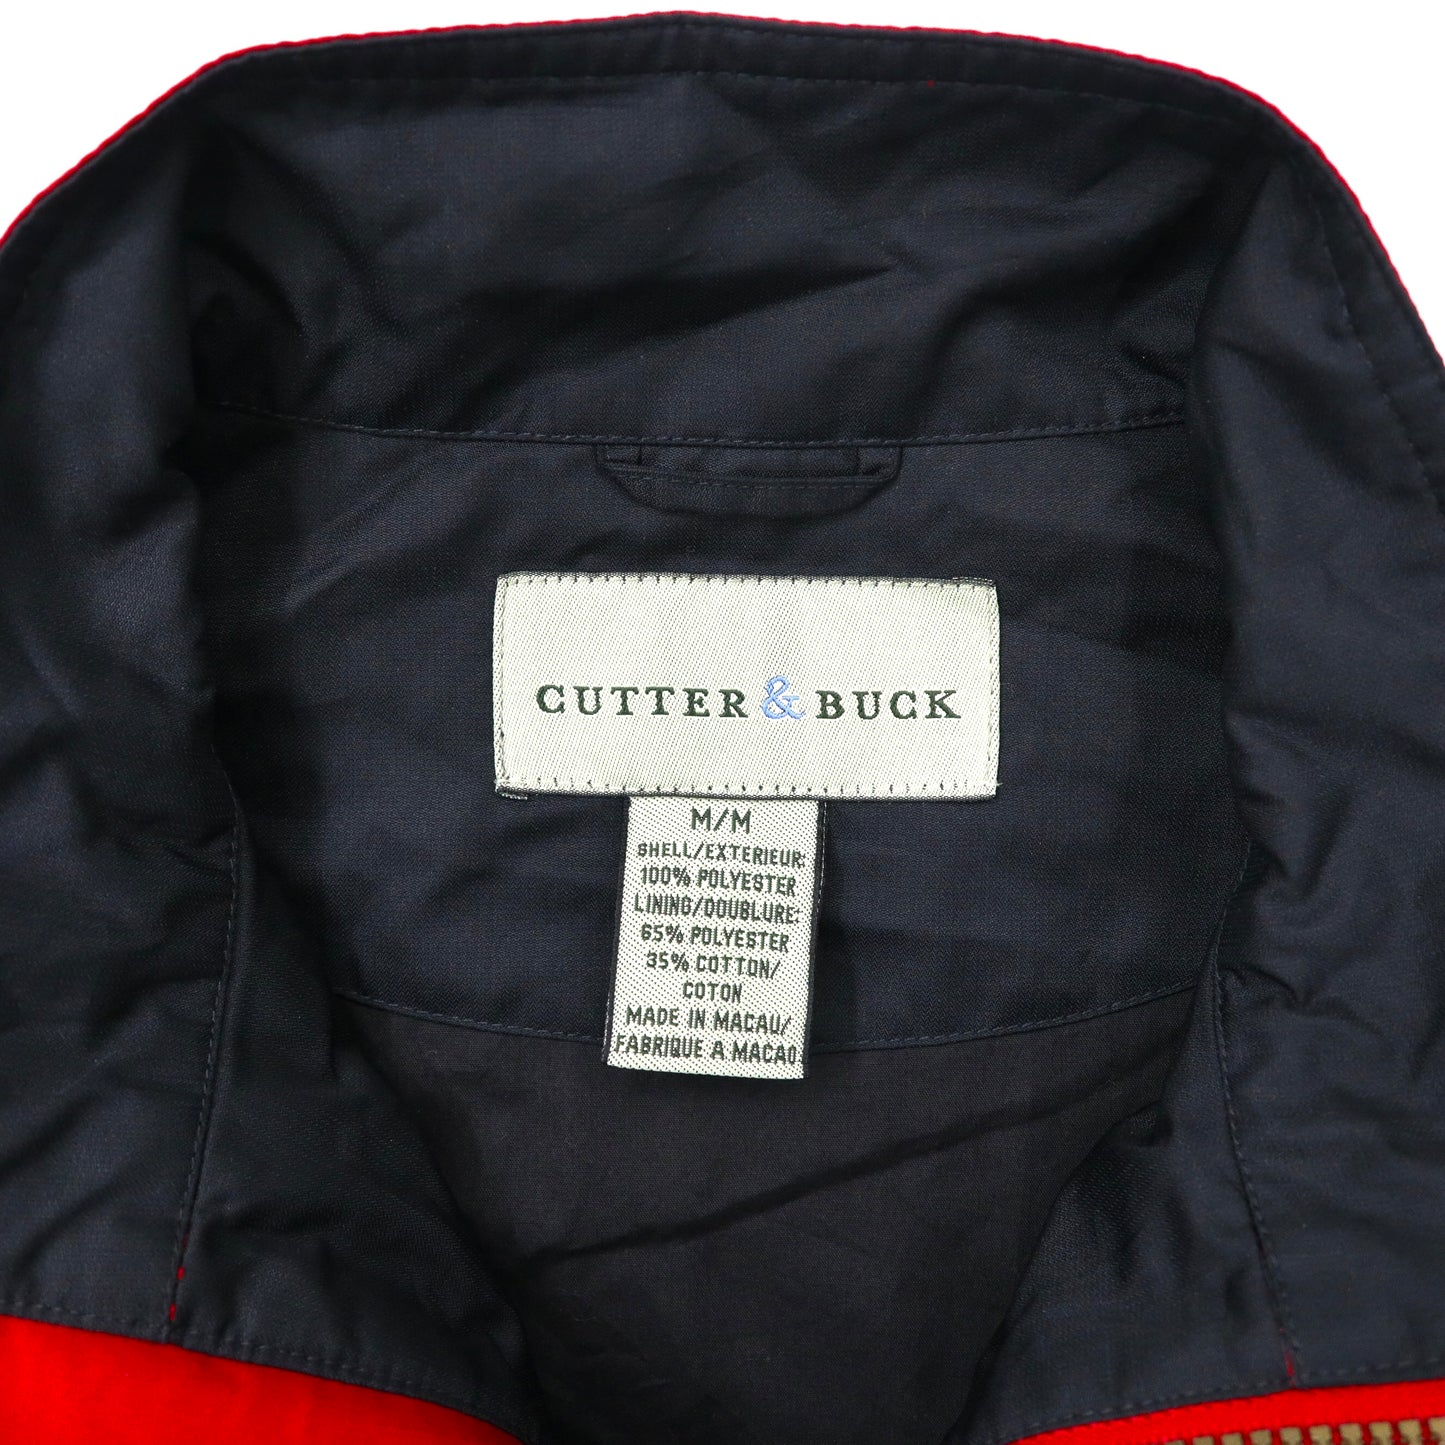 CUTTER & BUCK ビッグサイズ ナイロンジャケット M レッド ロゴ刺繍